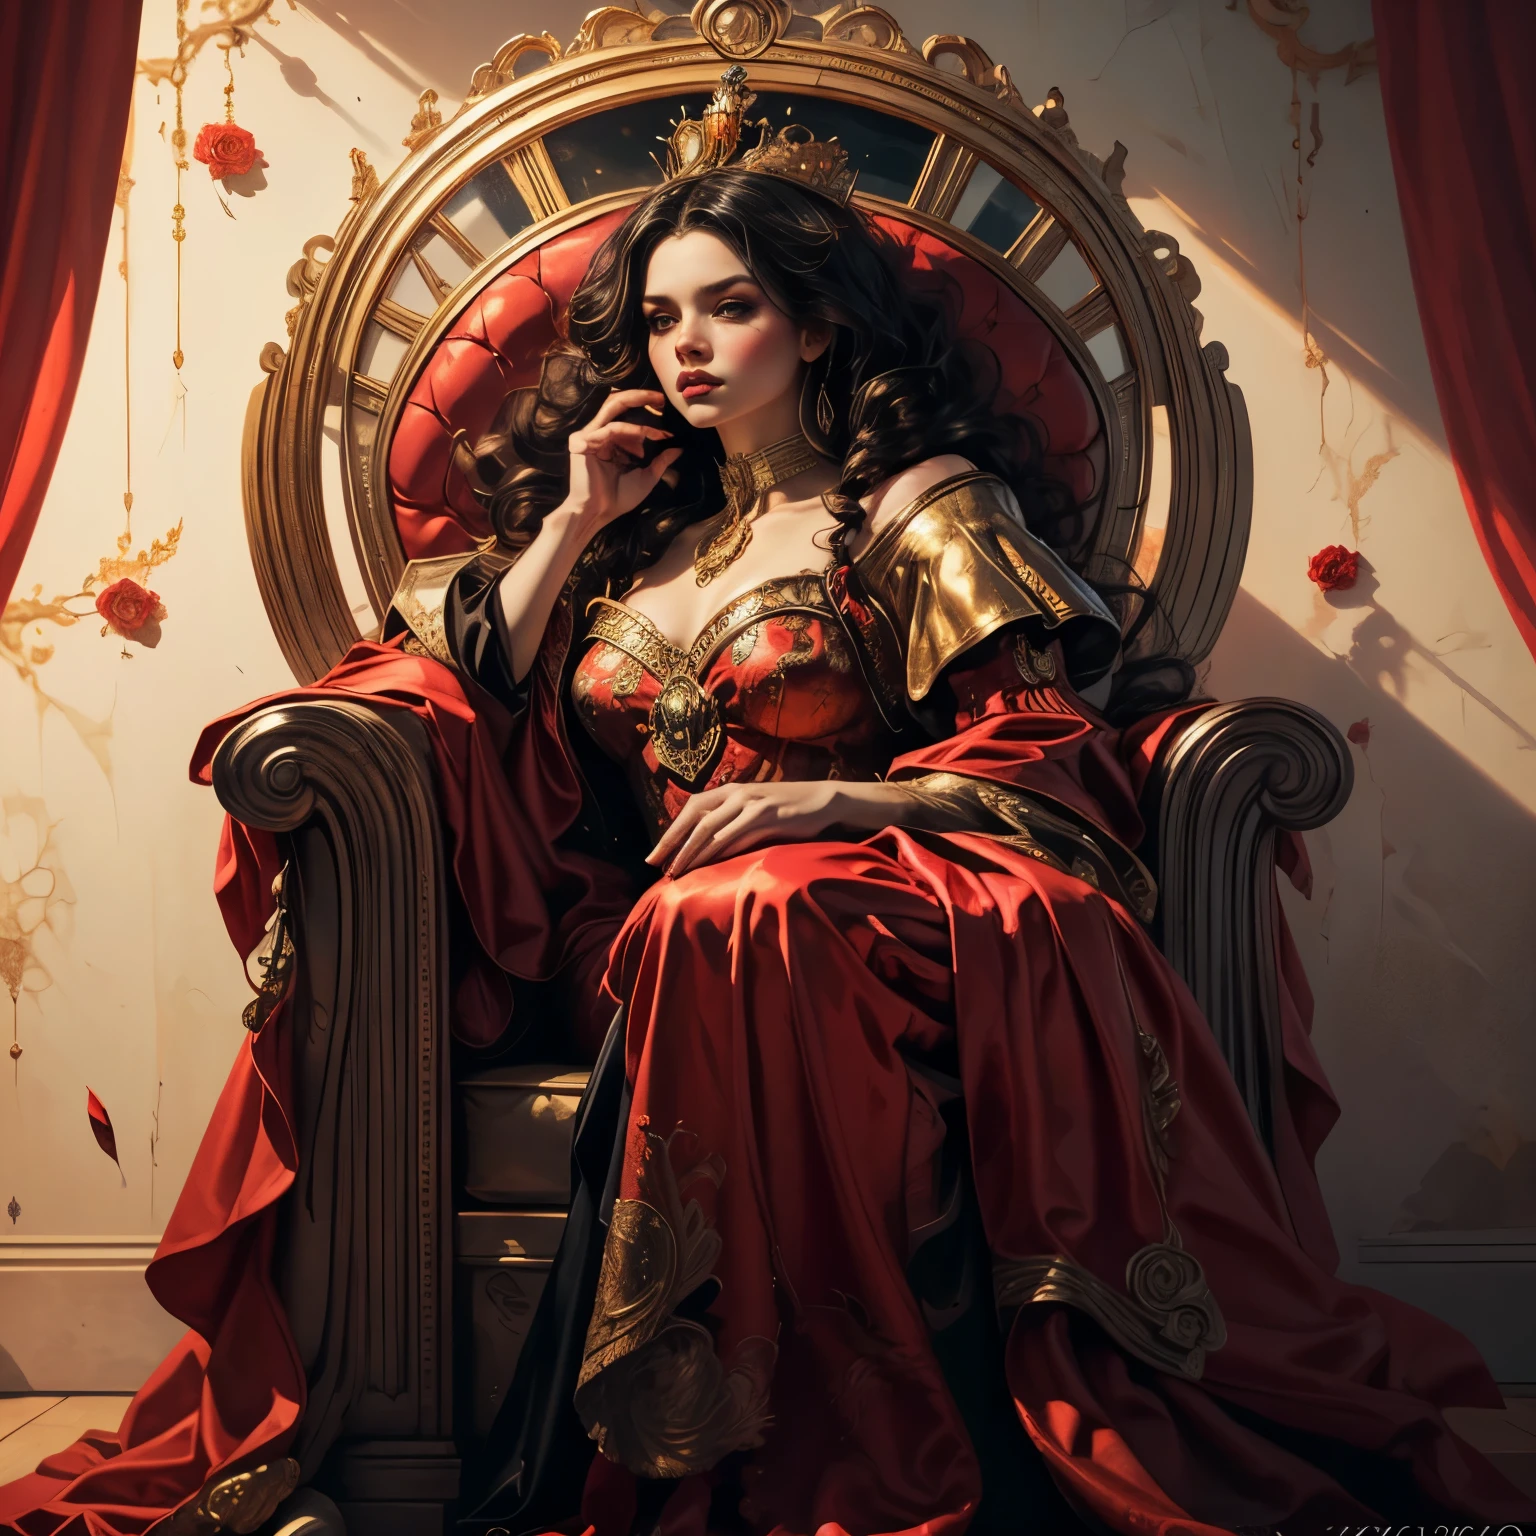 (全身肖像:1.1), 美丽的红心皇后, 优雅长红裙, 飘逸的红色斗篷, 金色王冠, 夺目的红色妆容, 犀利的目光, 王者姿态, 华丽的王座, 充满粉色和红色玫瑰的背景:1.1, 戏剧灯光, (最好的质量,4K,8千,高分辨率,杰作:1.2),极其详细,(实际的,photo实际的,photo-实际的:1.37),复杂的细节,电影构图,鲜艳的色彩,明暗对比照明,戏剧性的阴影,幻想,数字艺术